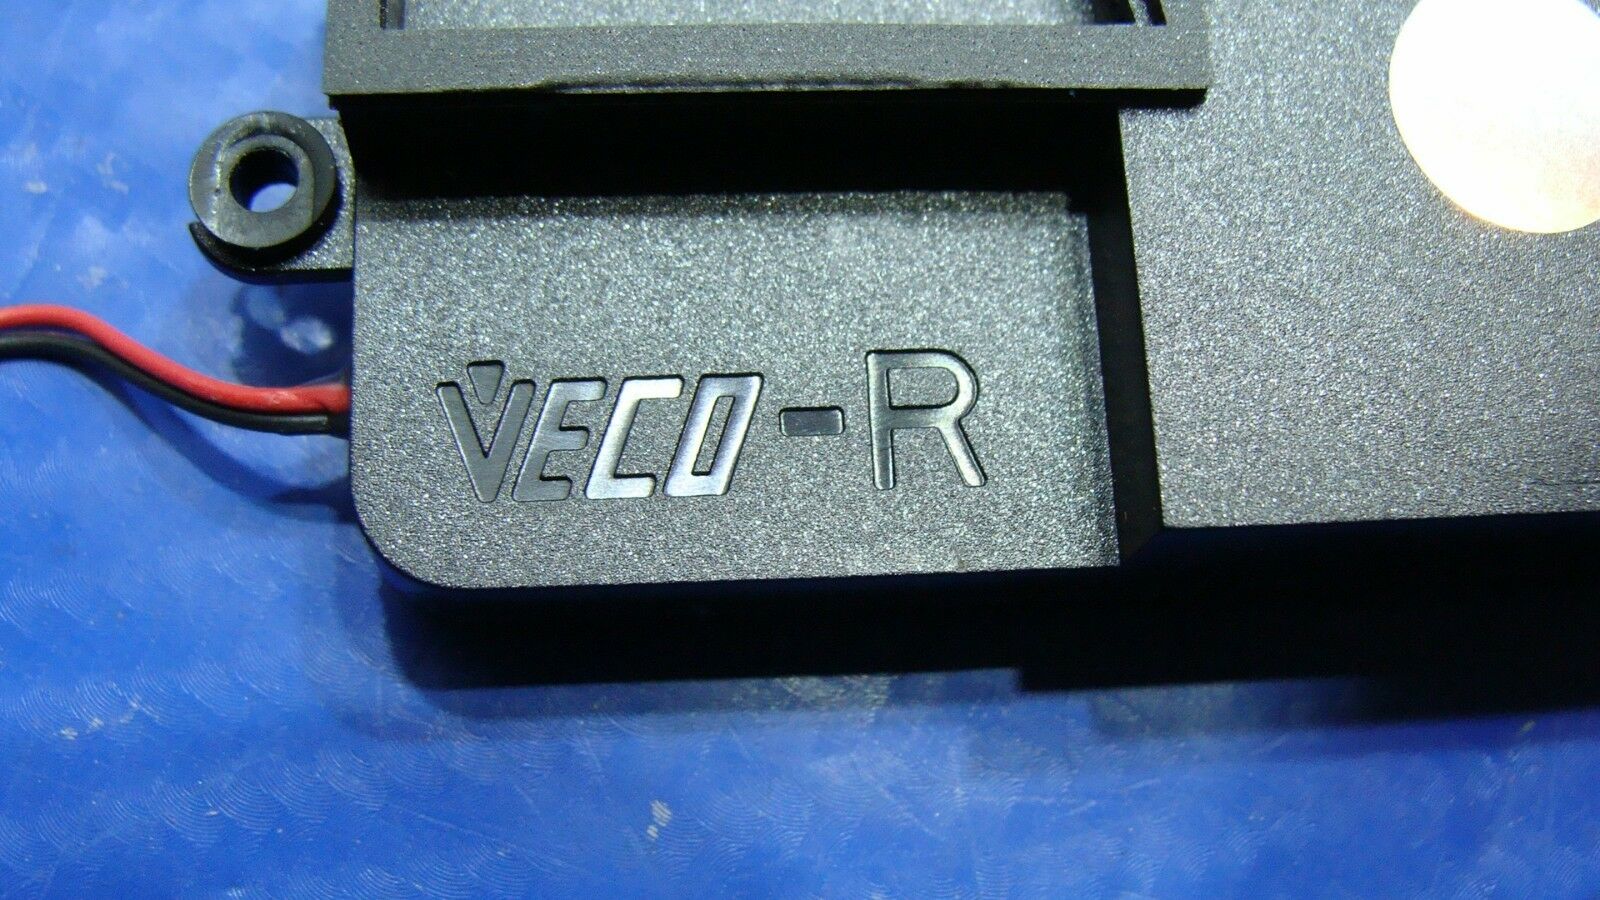 Razer Blade Pro RZ09-02202E75 17.3